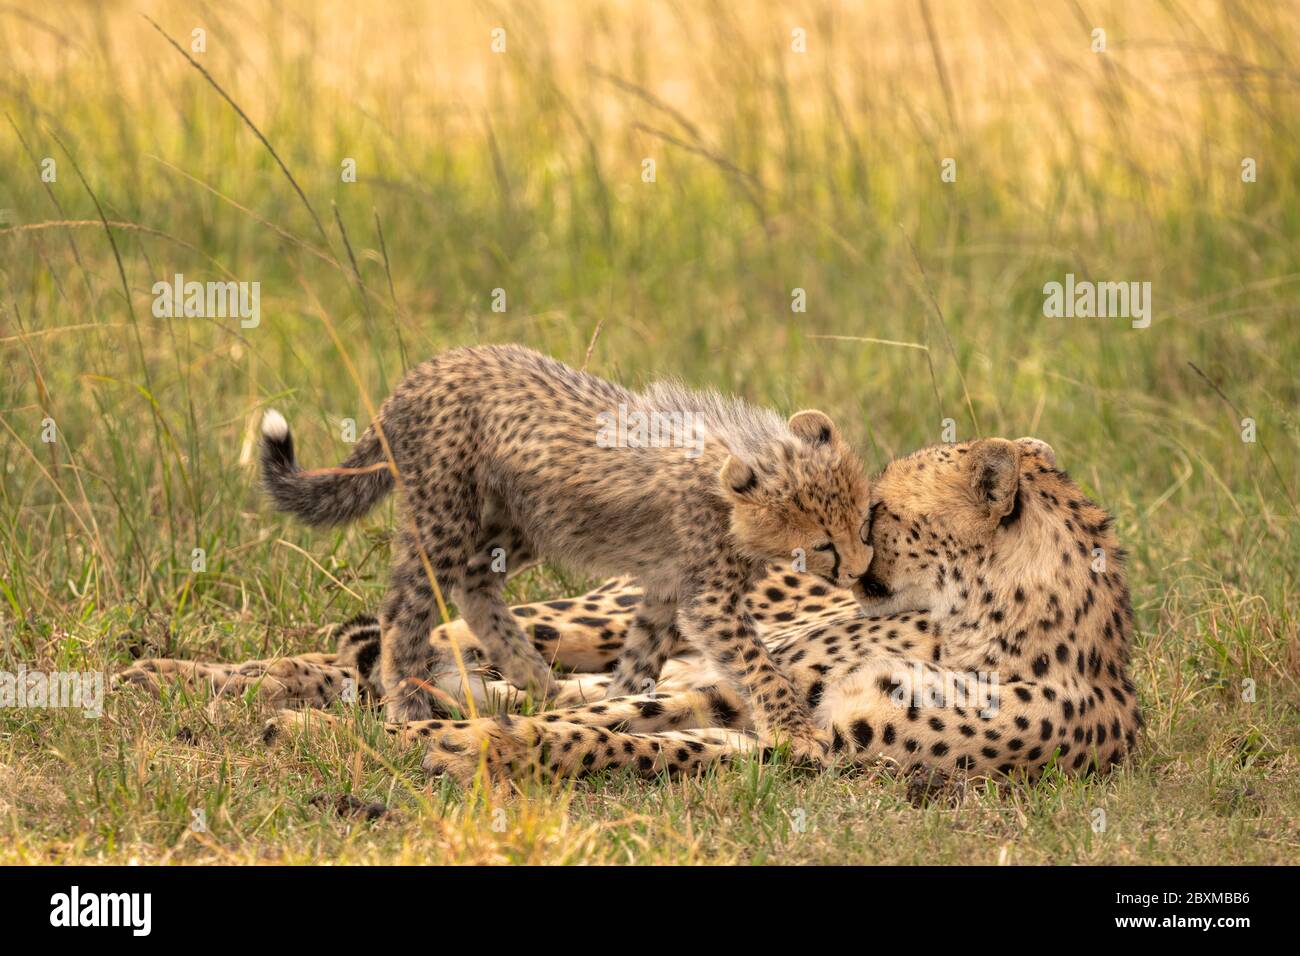 Cheetah cub et mère partageant un moment tendre en frottant le nez. Photo prise dans la réserve nationale de Maasai Mara, Kenya. Banque D'Images